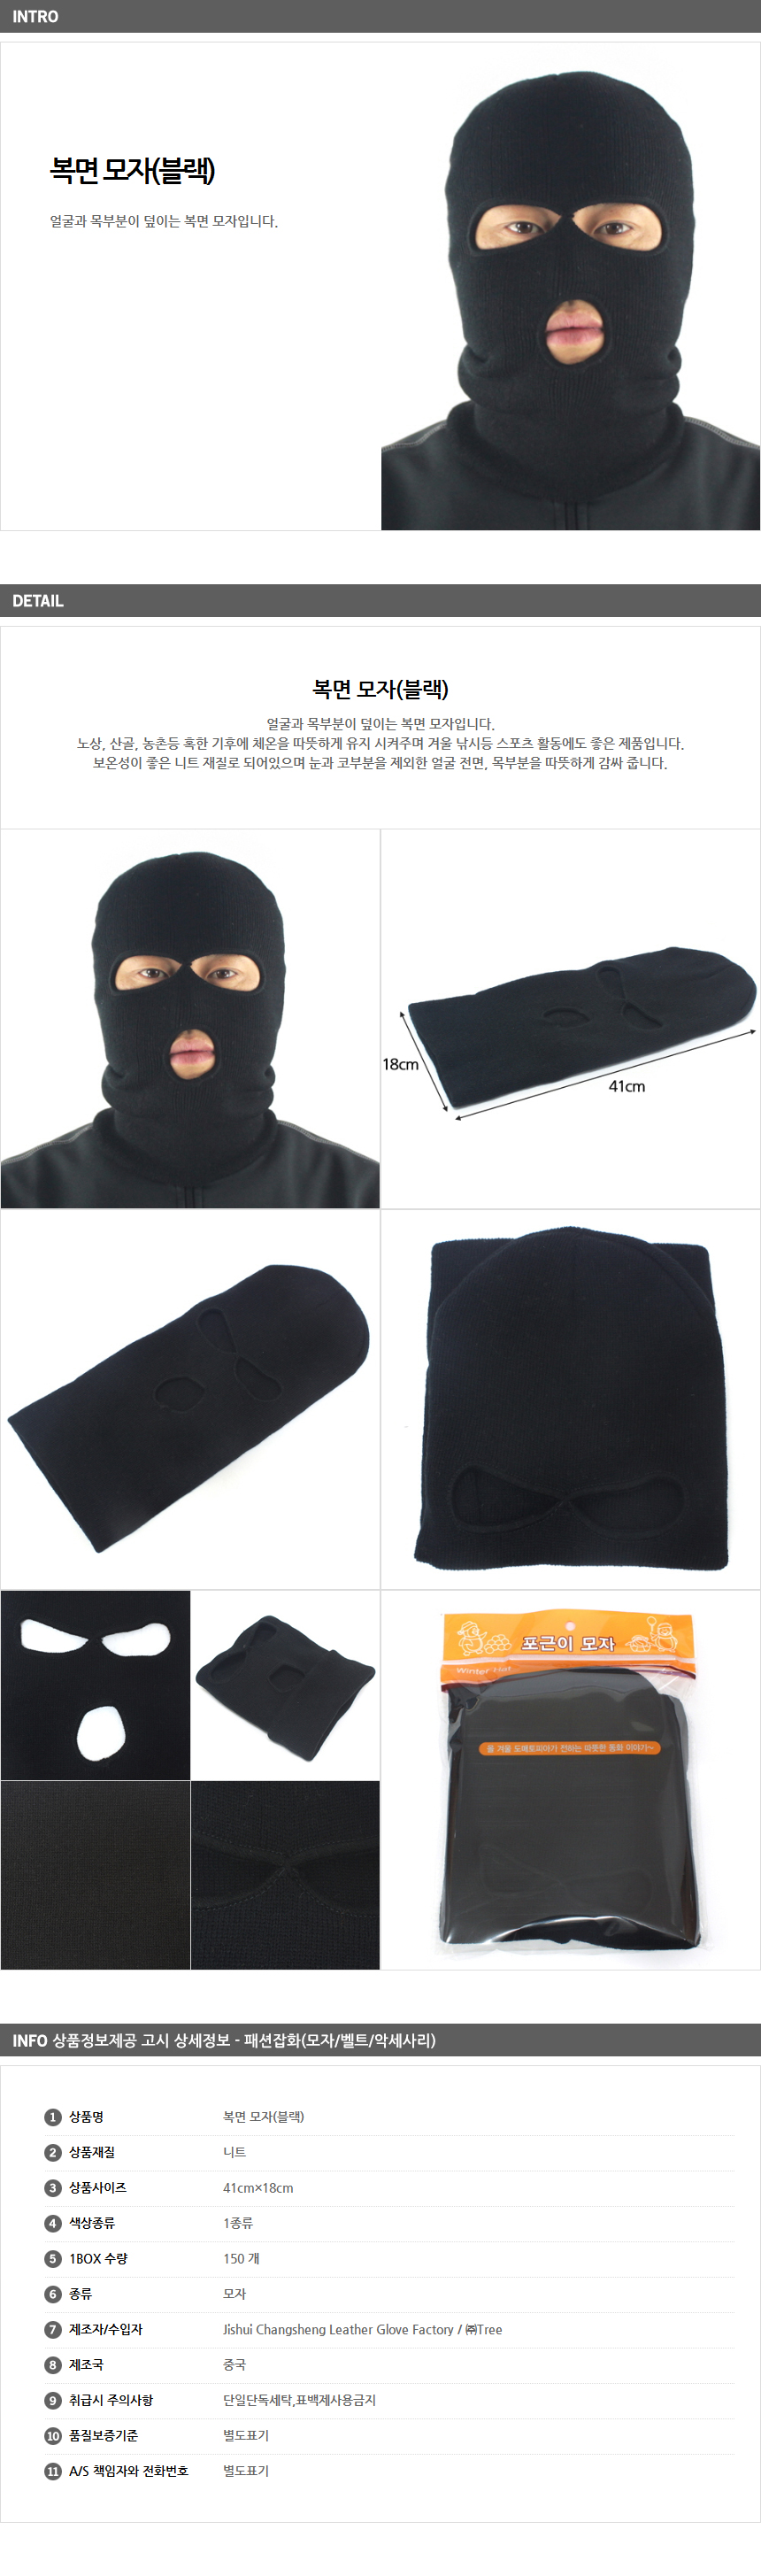 복면 모자(블랙)/단체모자 군대납품용 썰매장판매용